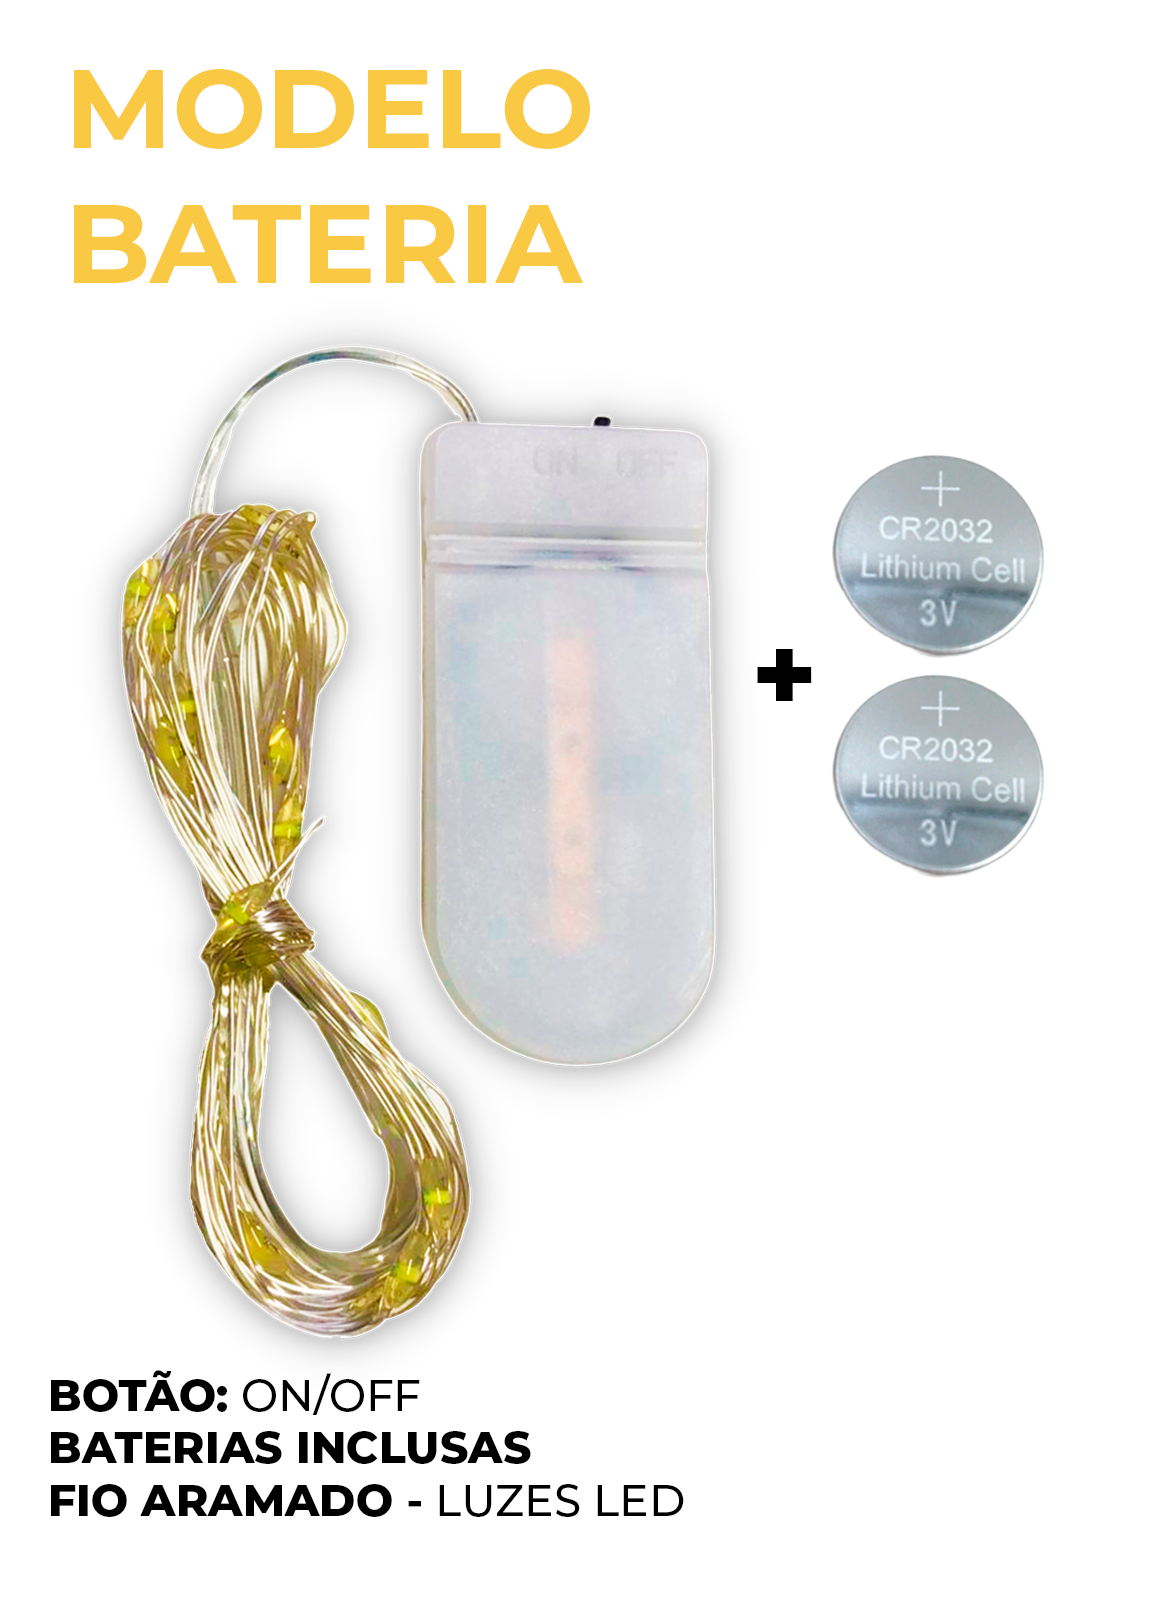 Modelo Bateria, botão: on/off, com baterias inclusas e fio aramado com luzes de led